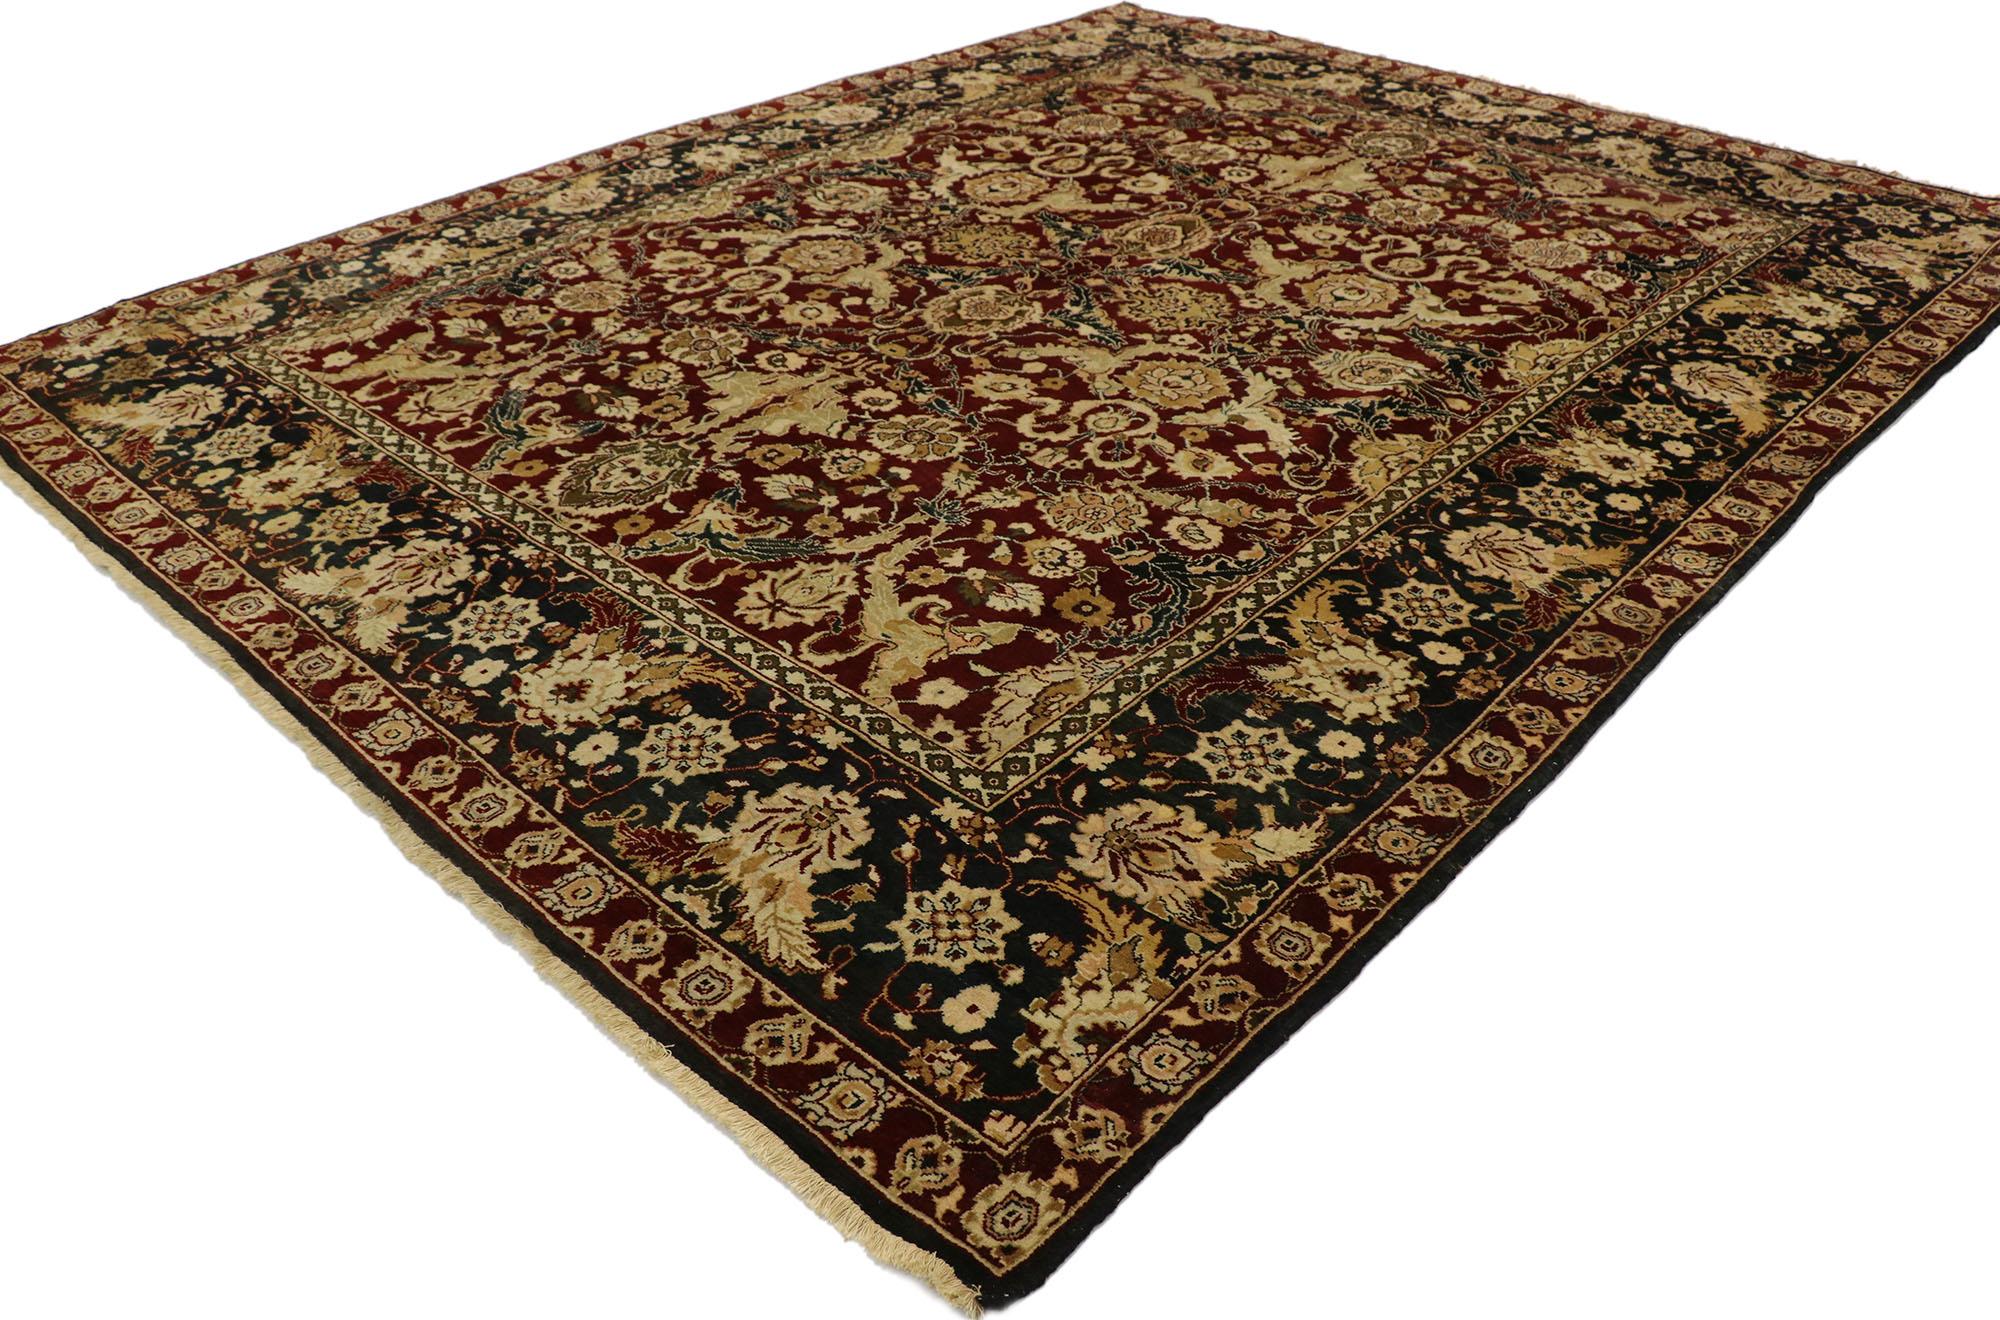 77554 tapis traditionnel indien vintage de style baroque damassé. Sûr de captiver les esthètes les plus exigeants, ce tapis indien vintage en laine nouée à la main est l'incarnation même de la tradition et du style baroque. Le riche champ de couleur